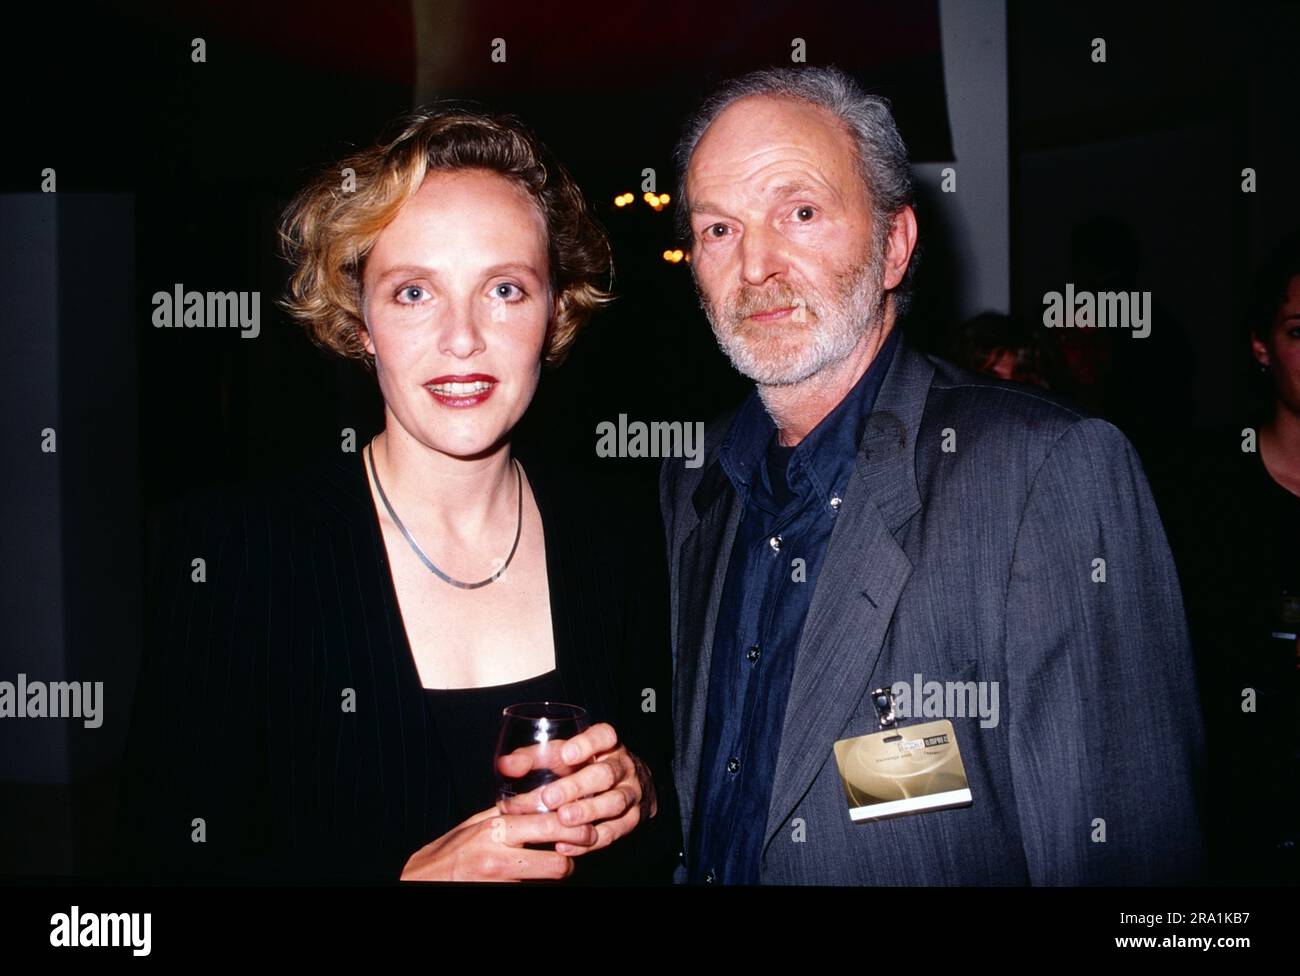 Juliane Köhler und Michael Gwisdek, bei einem event, circa 1999. Stock Photo